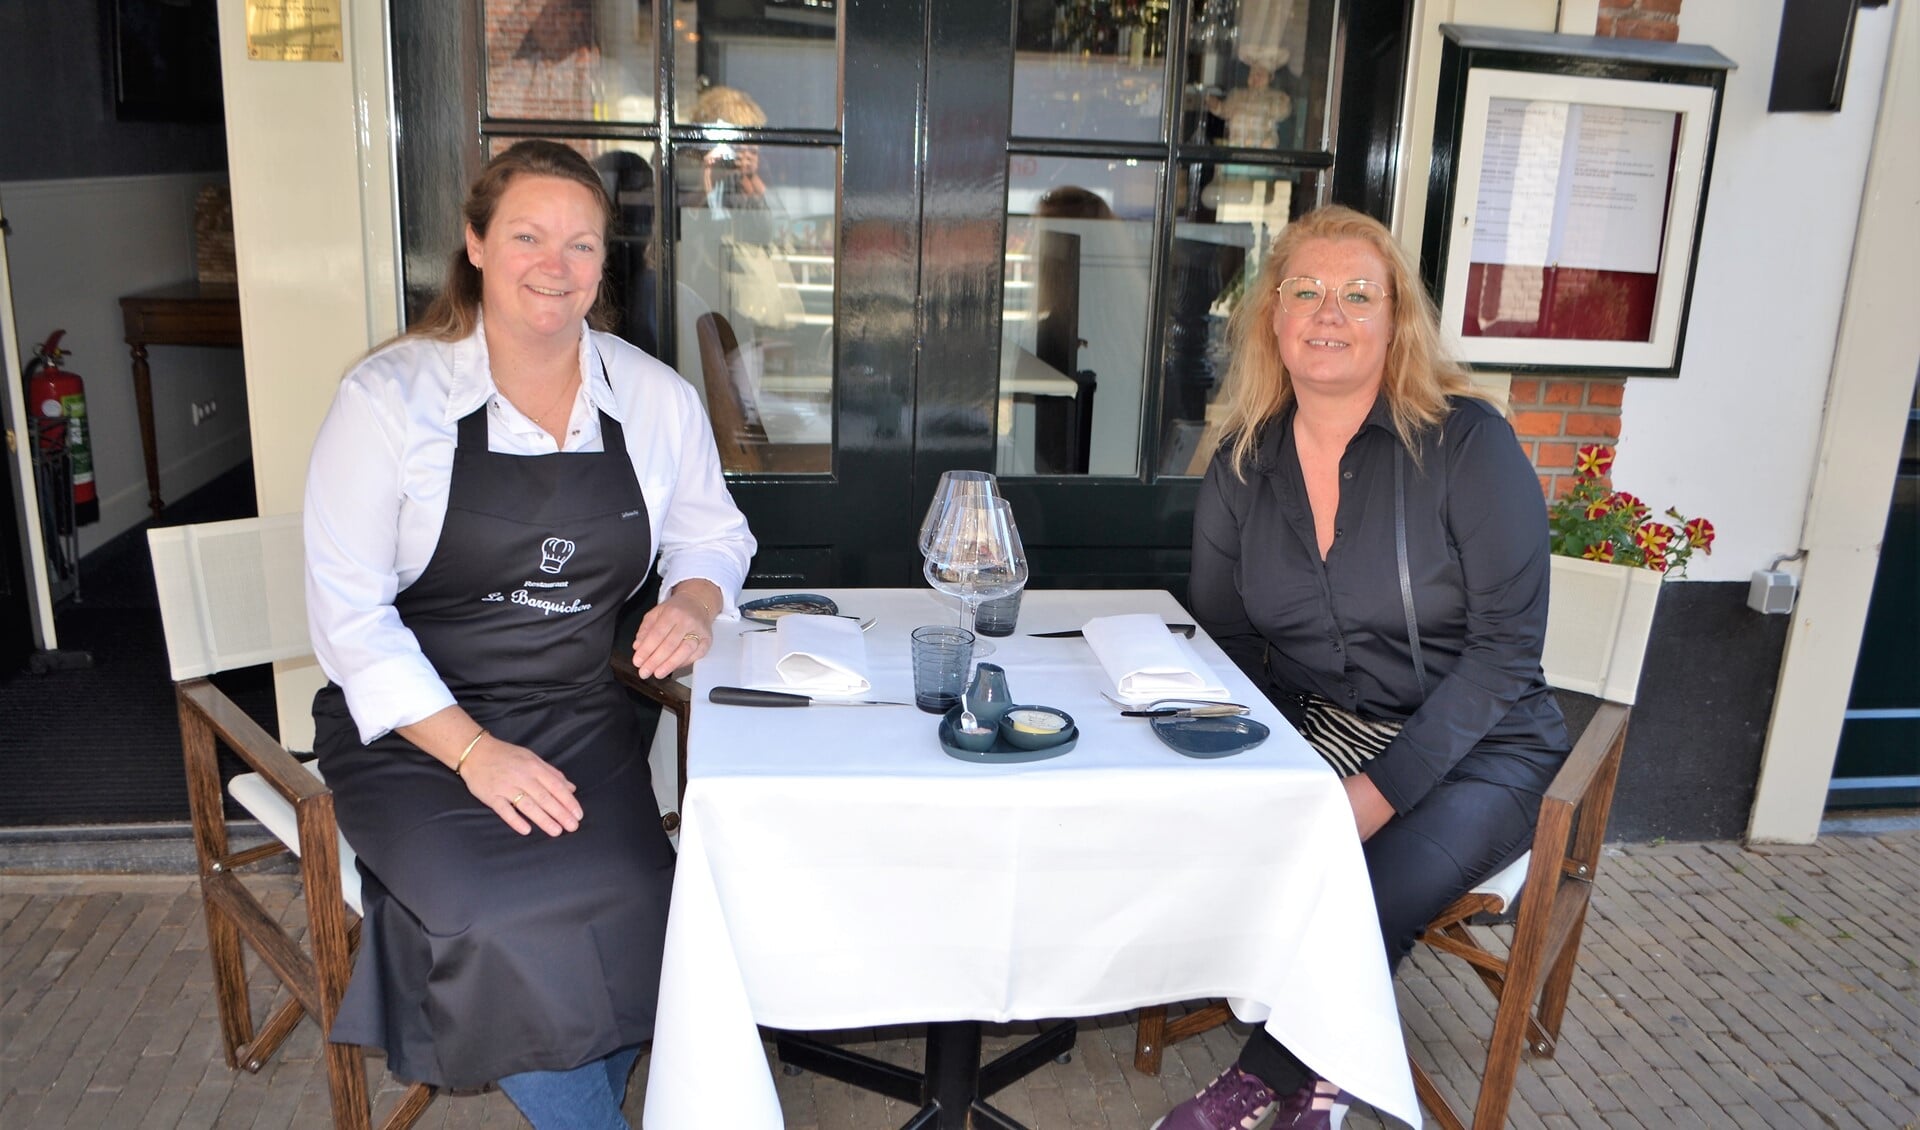 Ellen Kuijs van restaurant Le Barquichon en Yvette von Holtz van restaurant Eigenwijz (foto’s: Inge Koot).